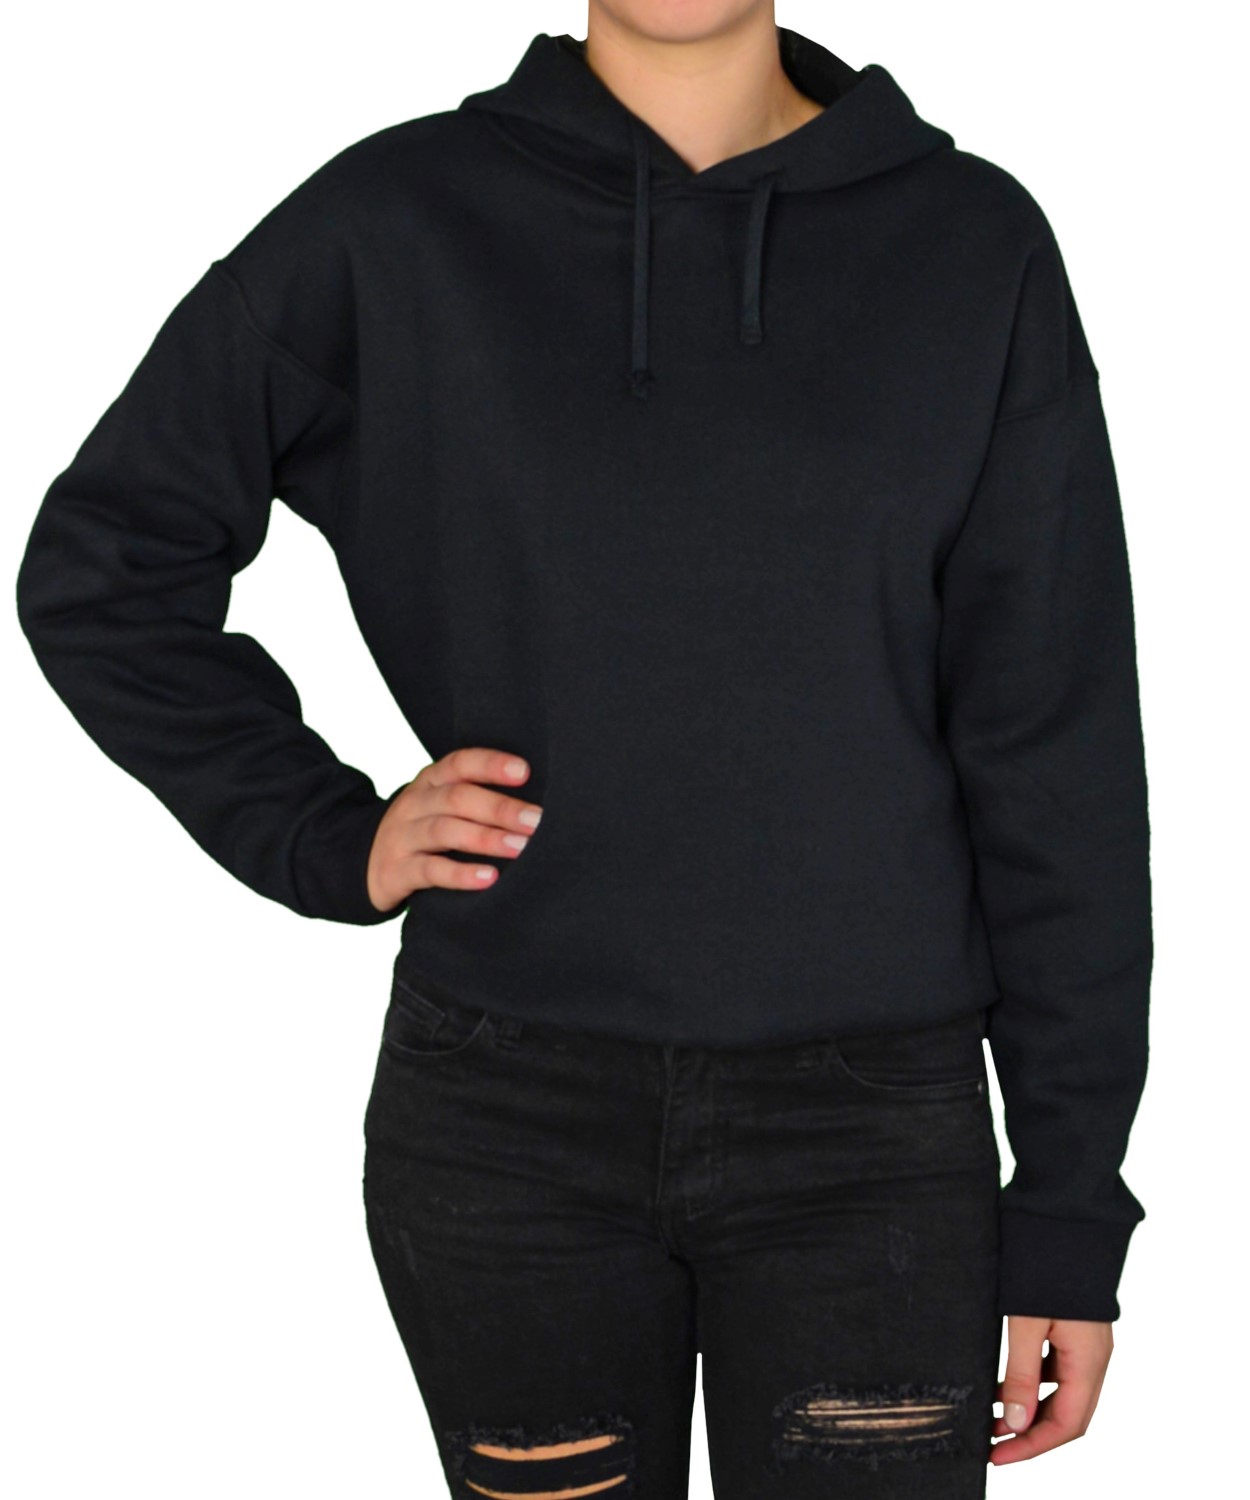 Γυναικείο κοντό φούτερ μαύρο με κουκούλα 875087C